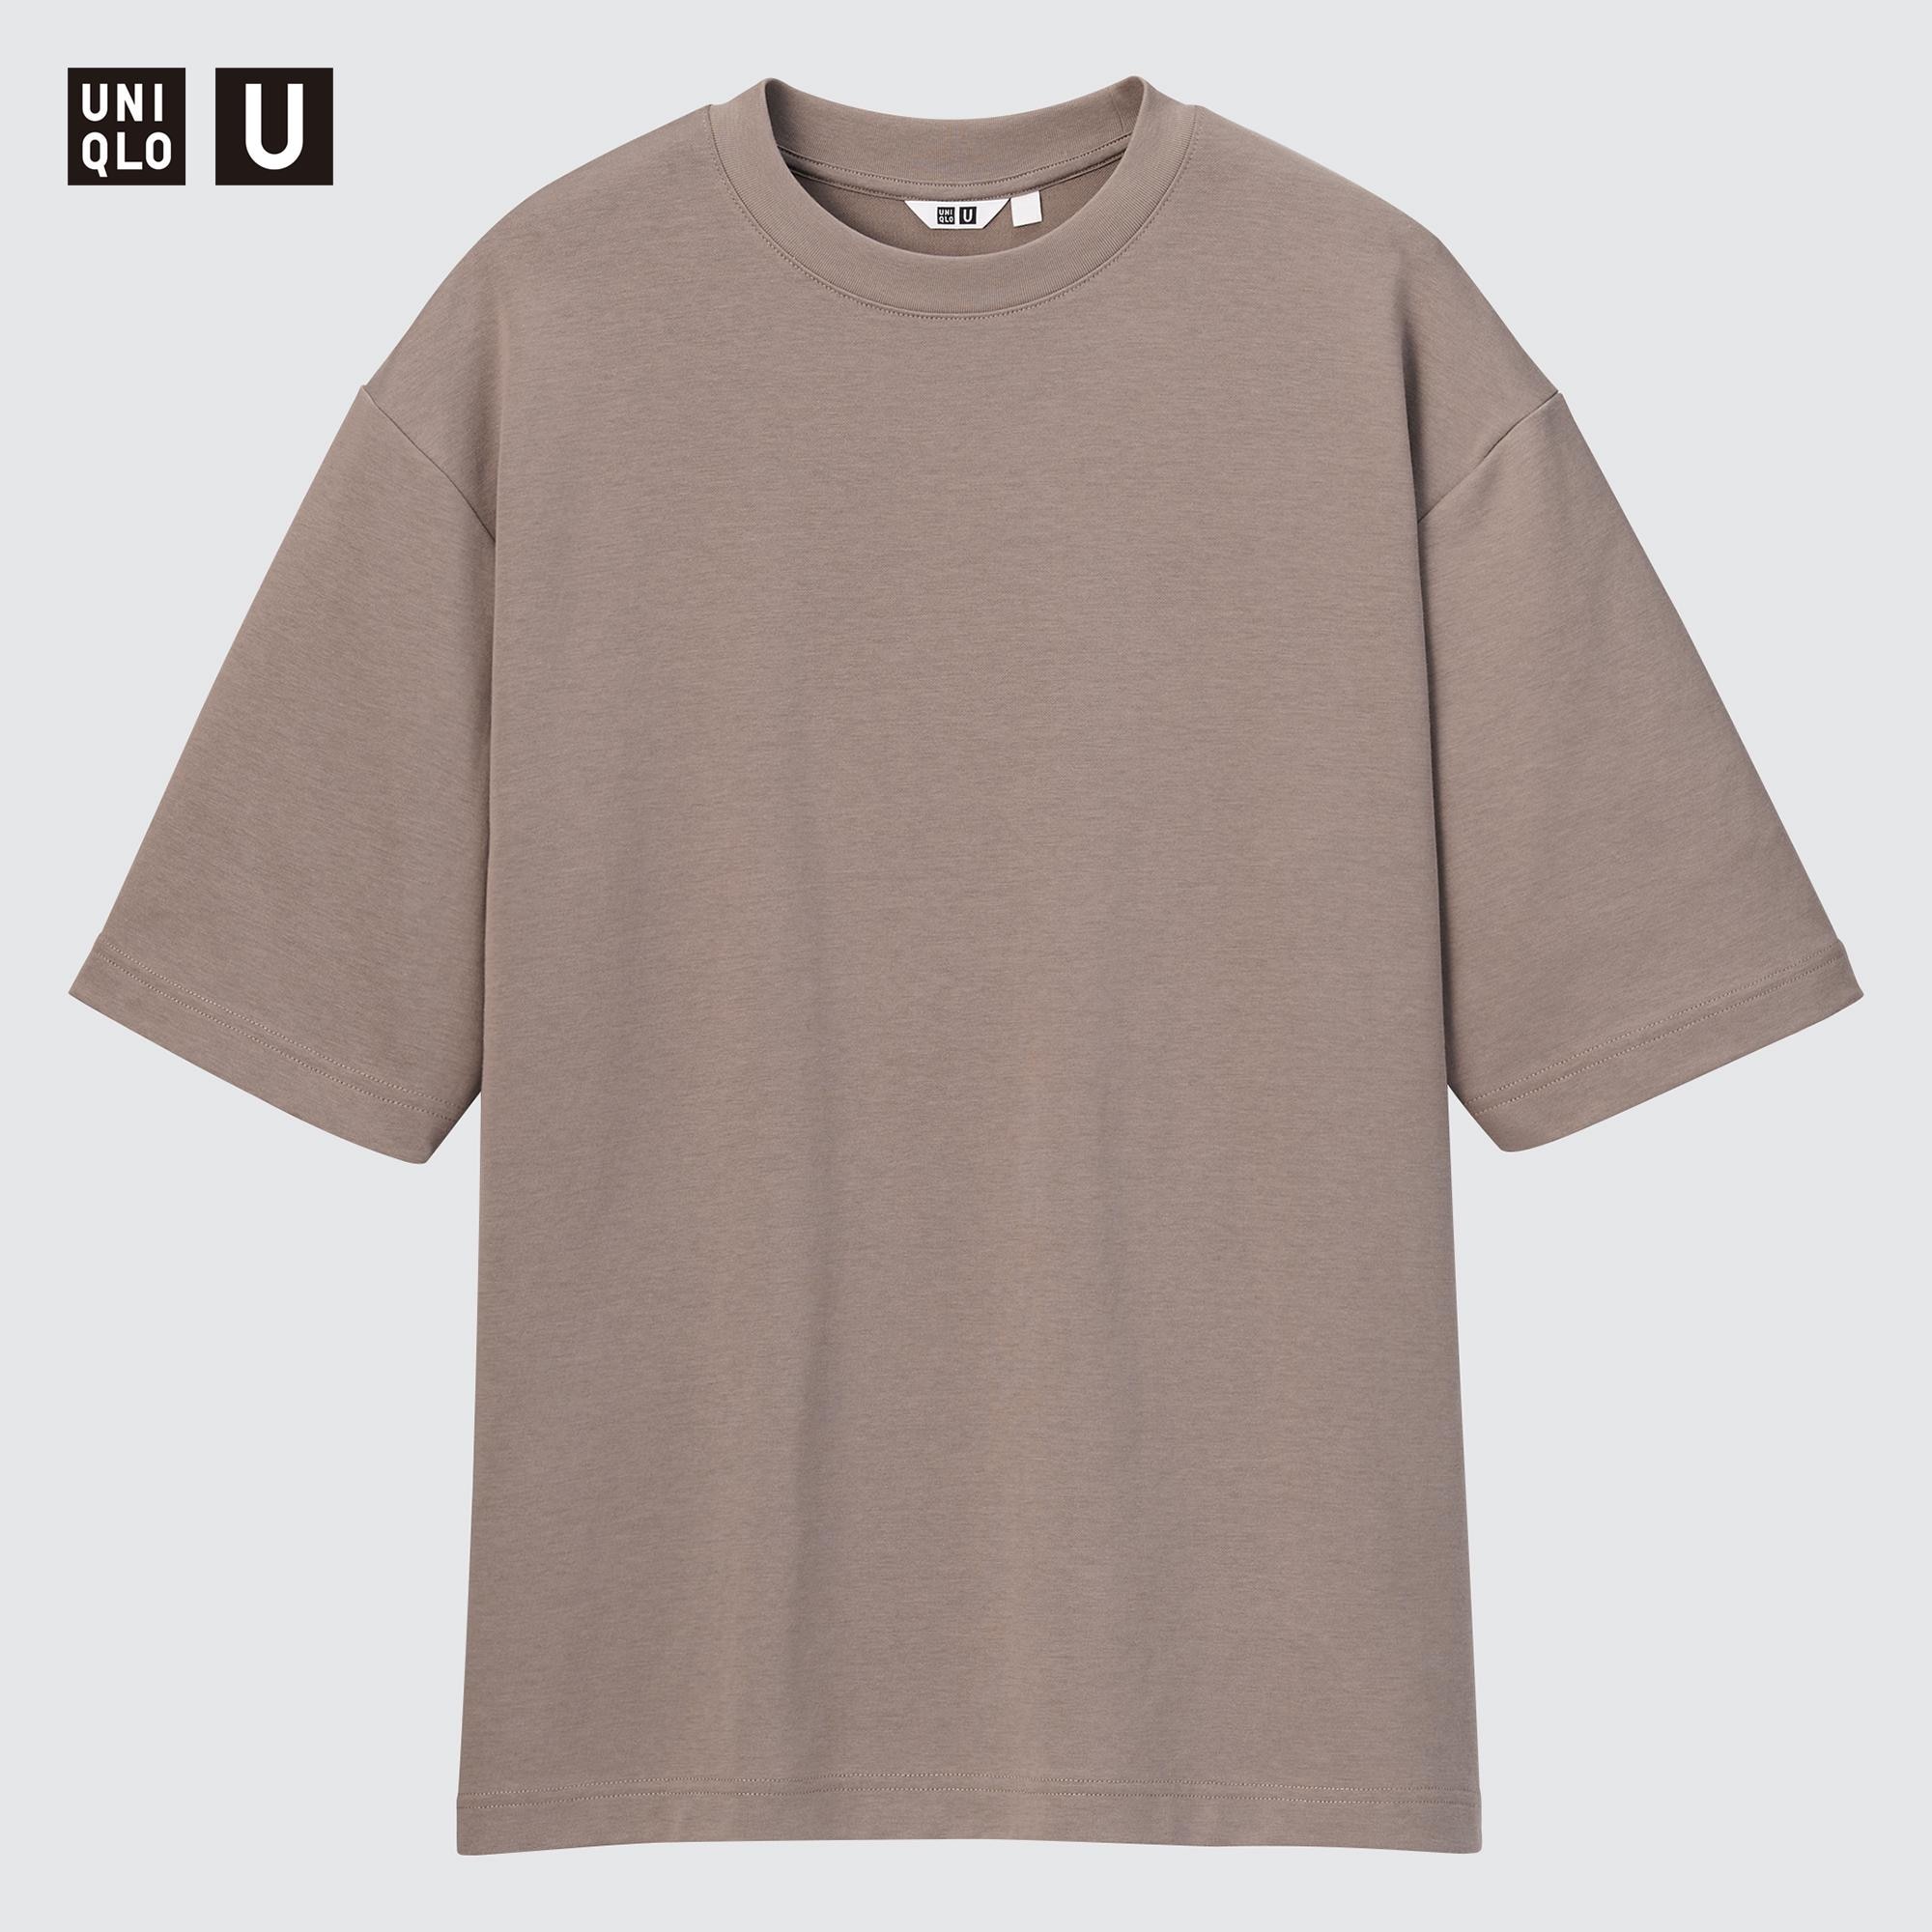 エアリズムコットンオーバーサイズtシャツ 5分袖 の口コミ 評判 メンズ ユニクロ 商品番号 E 000